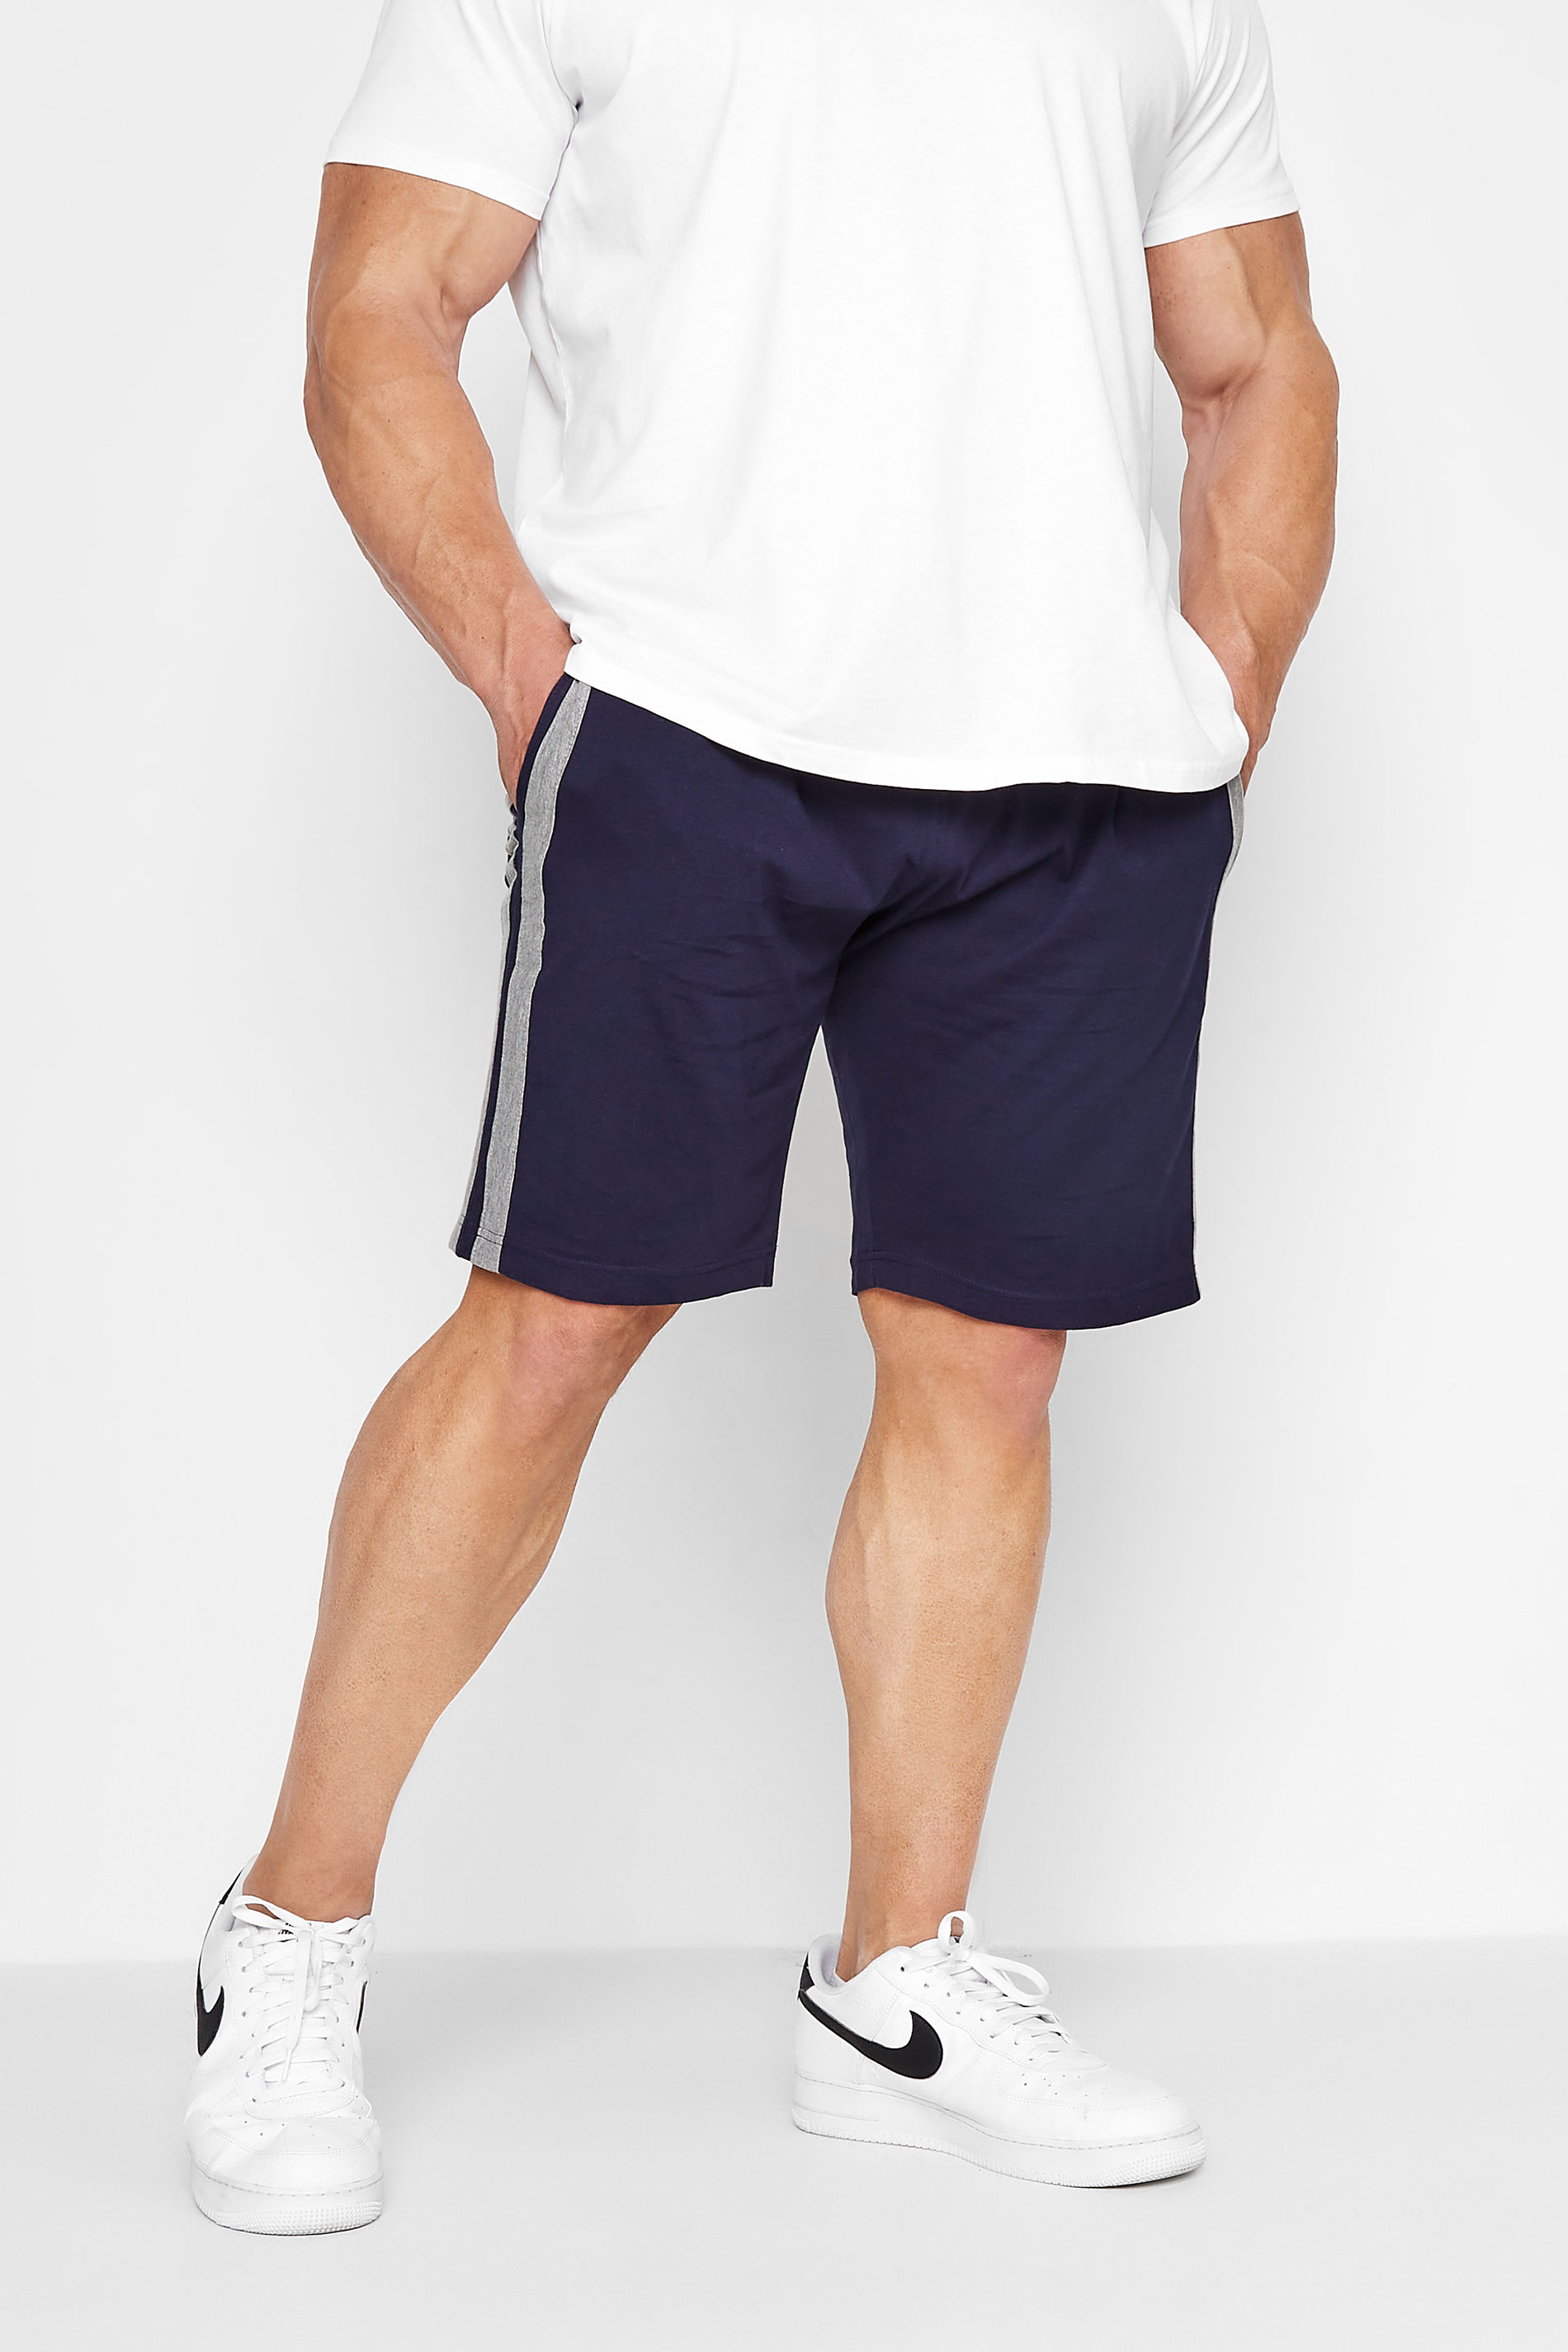 ED BAXTER Navy Blue Lounge Jogger Shorts | BadRhino 1